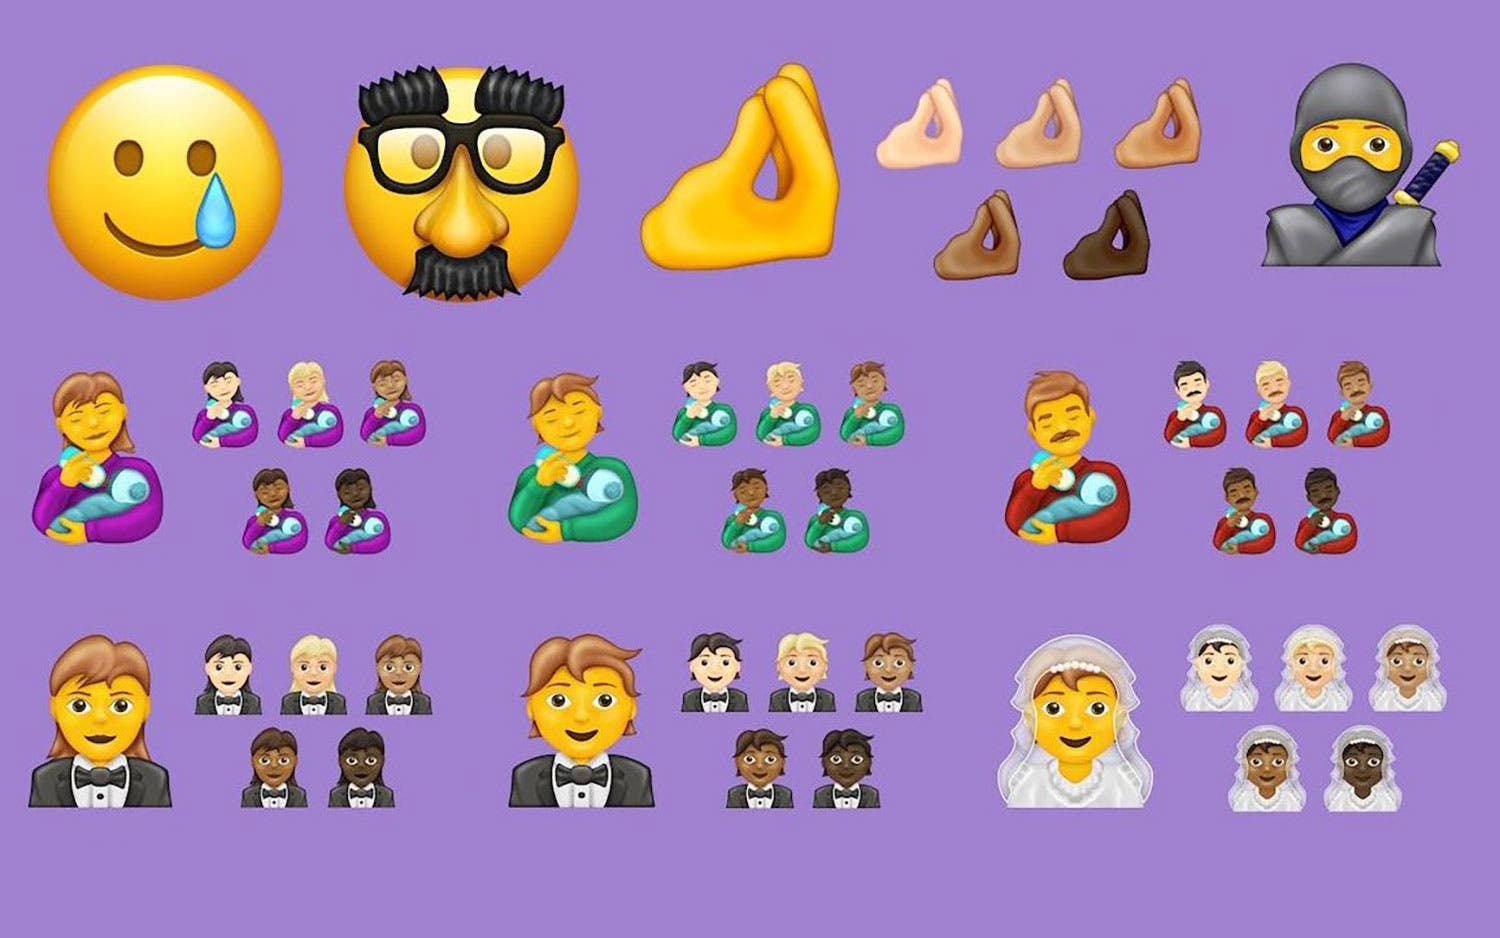 mas de 200 nuevos emojis llegan a whatsapp